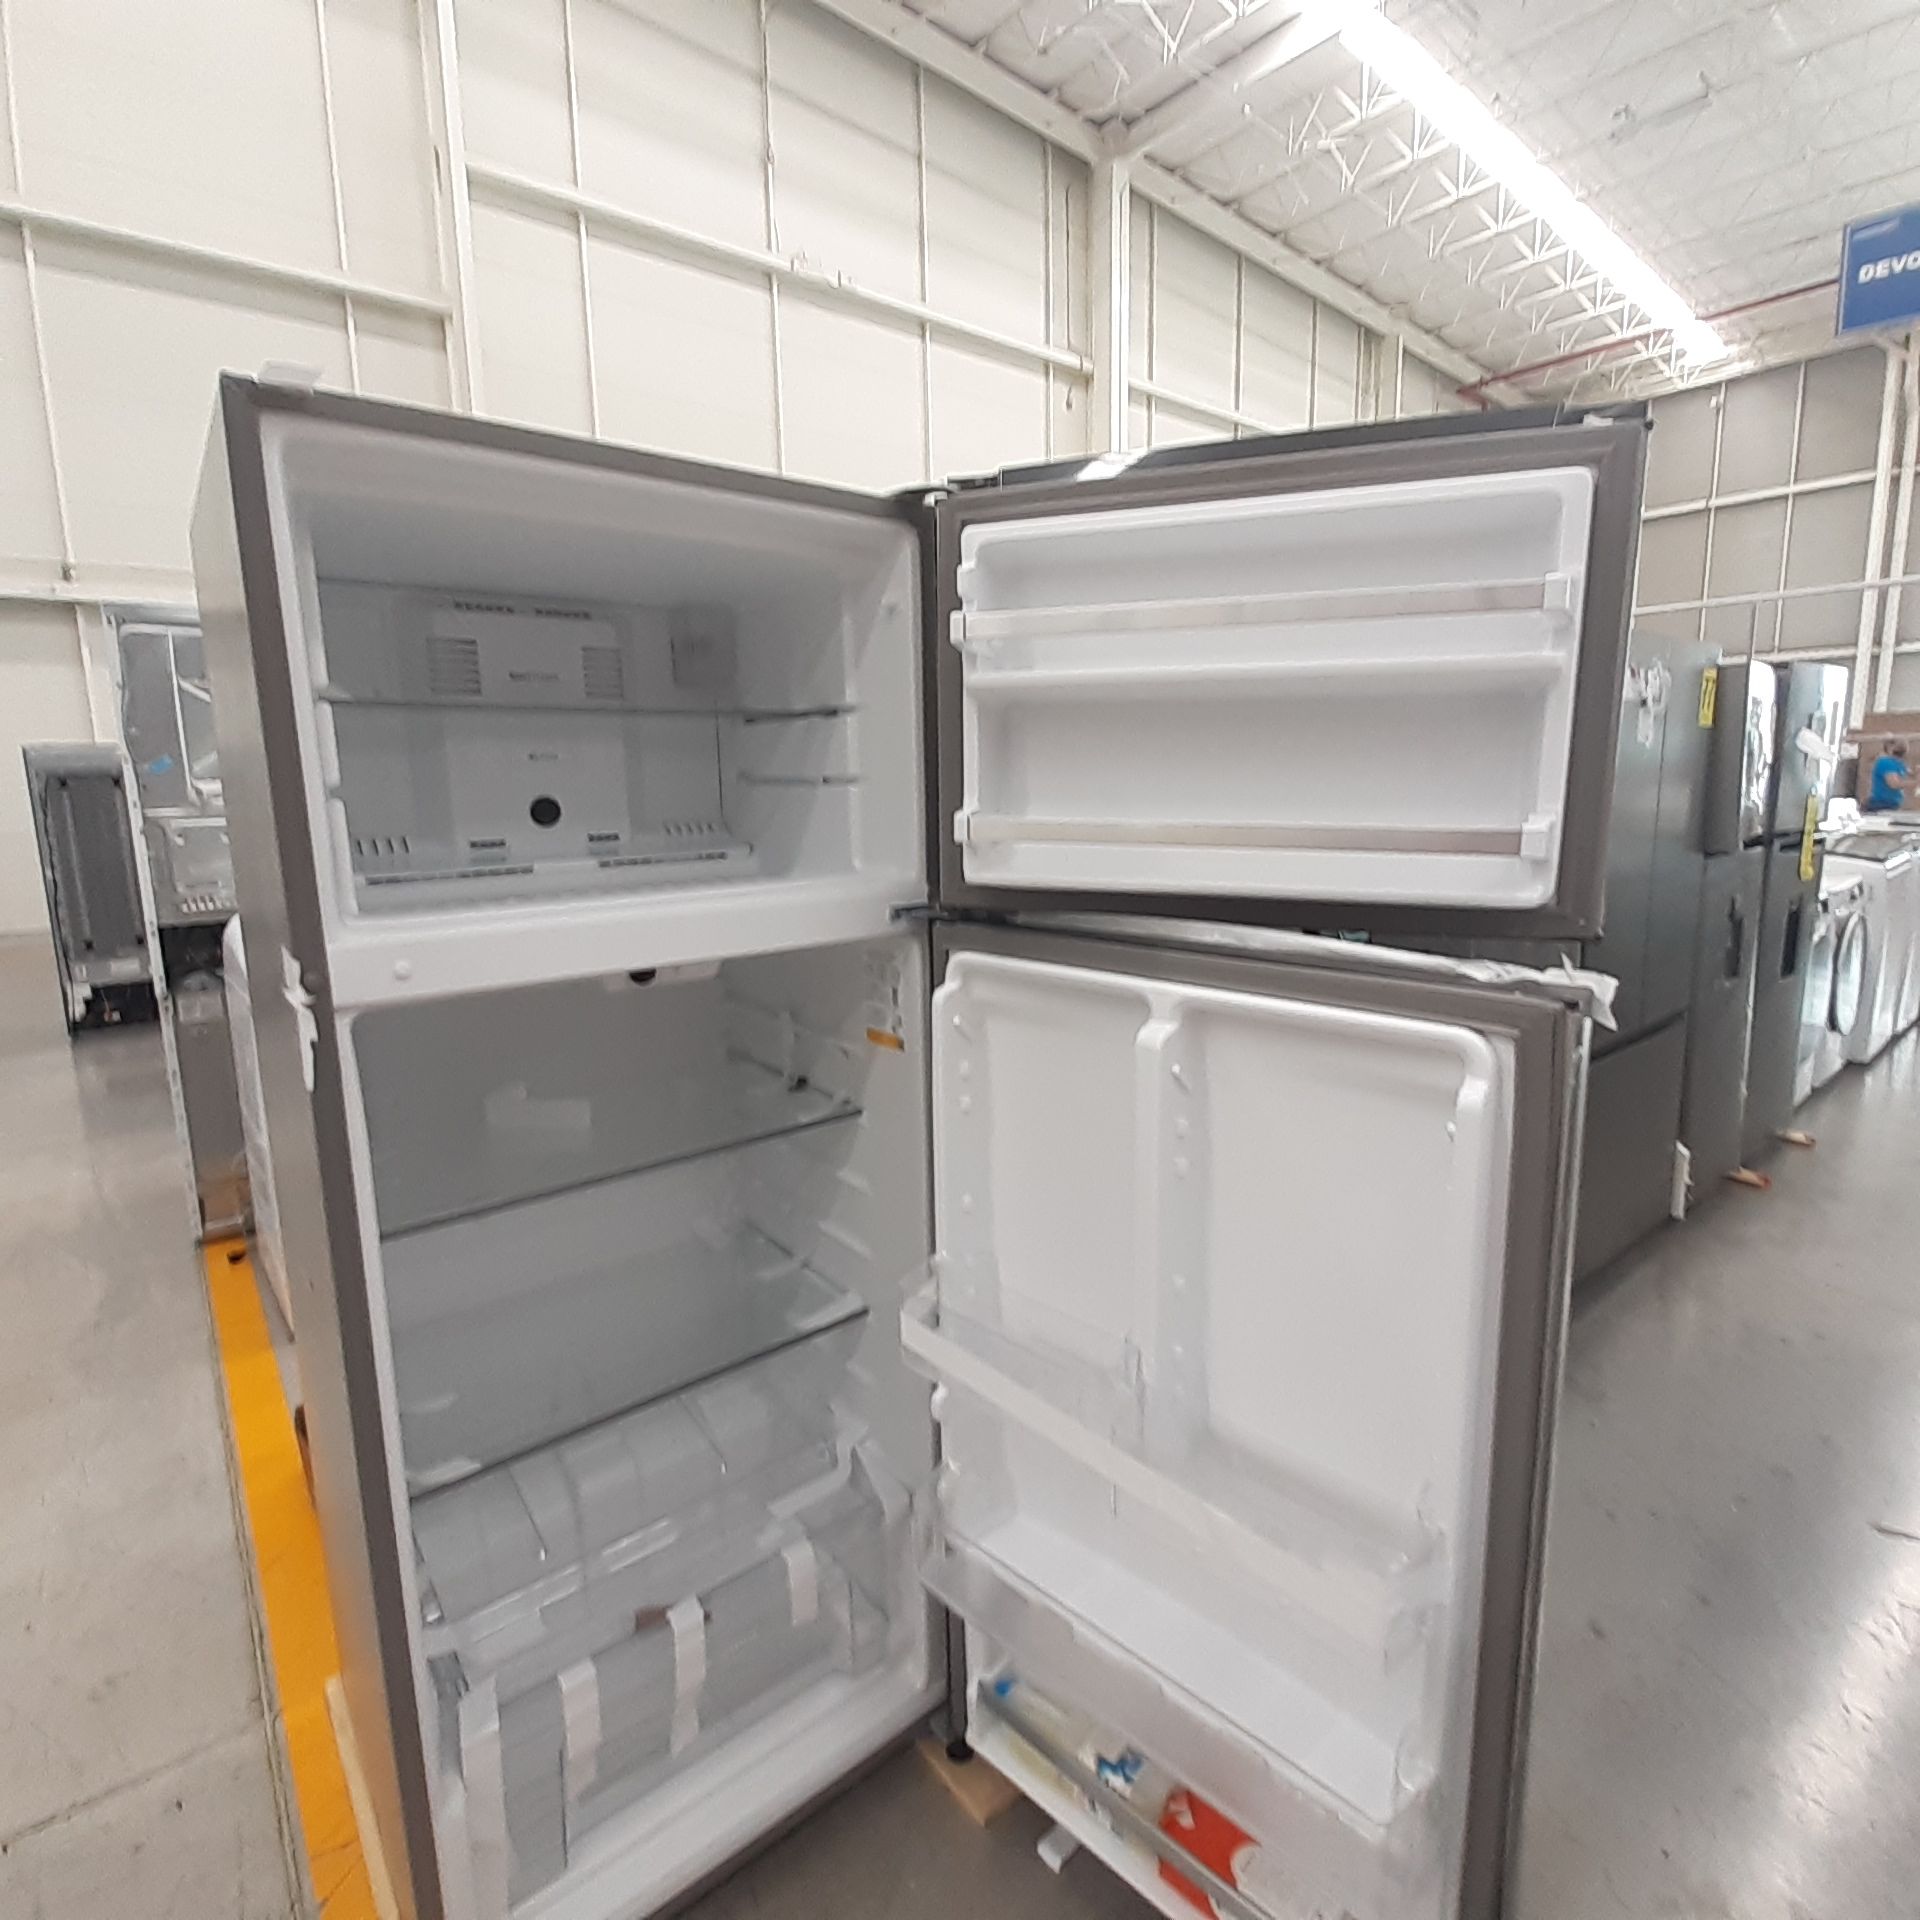 Lote De 3 Refrigeradores: 1 Refrigerador Marca Whirlpool, 1 Refrigerador Marca Mabe, 1 Refrigerador - Image 9 of 22